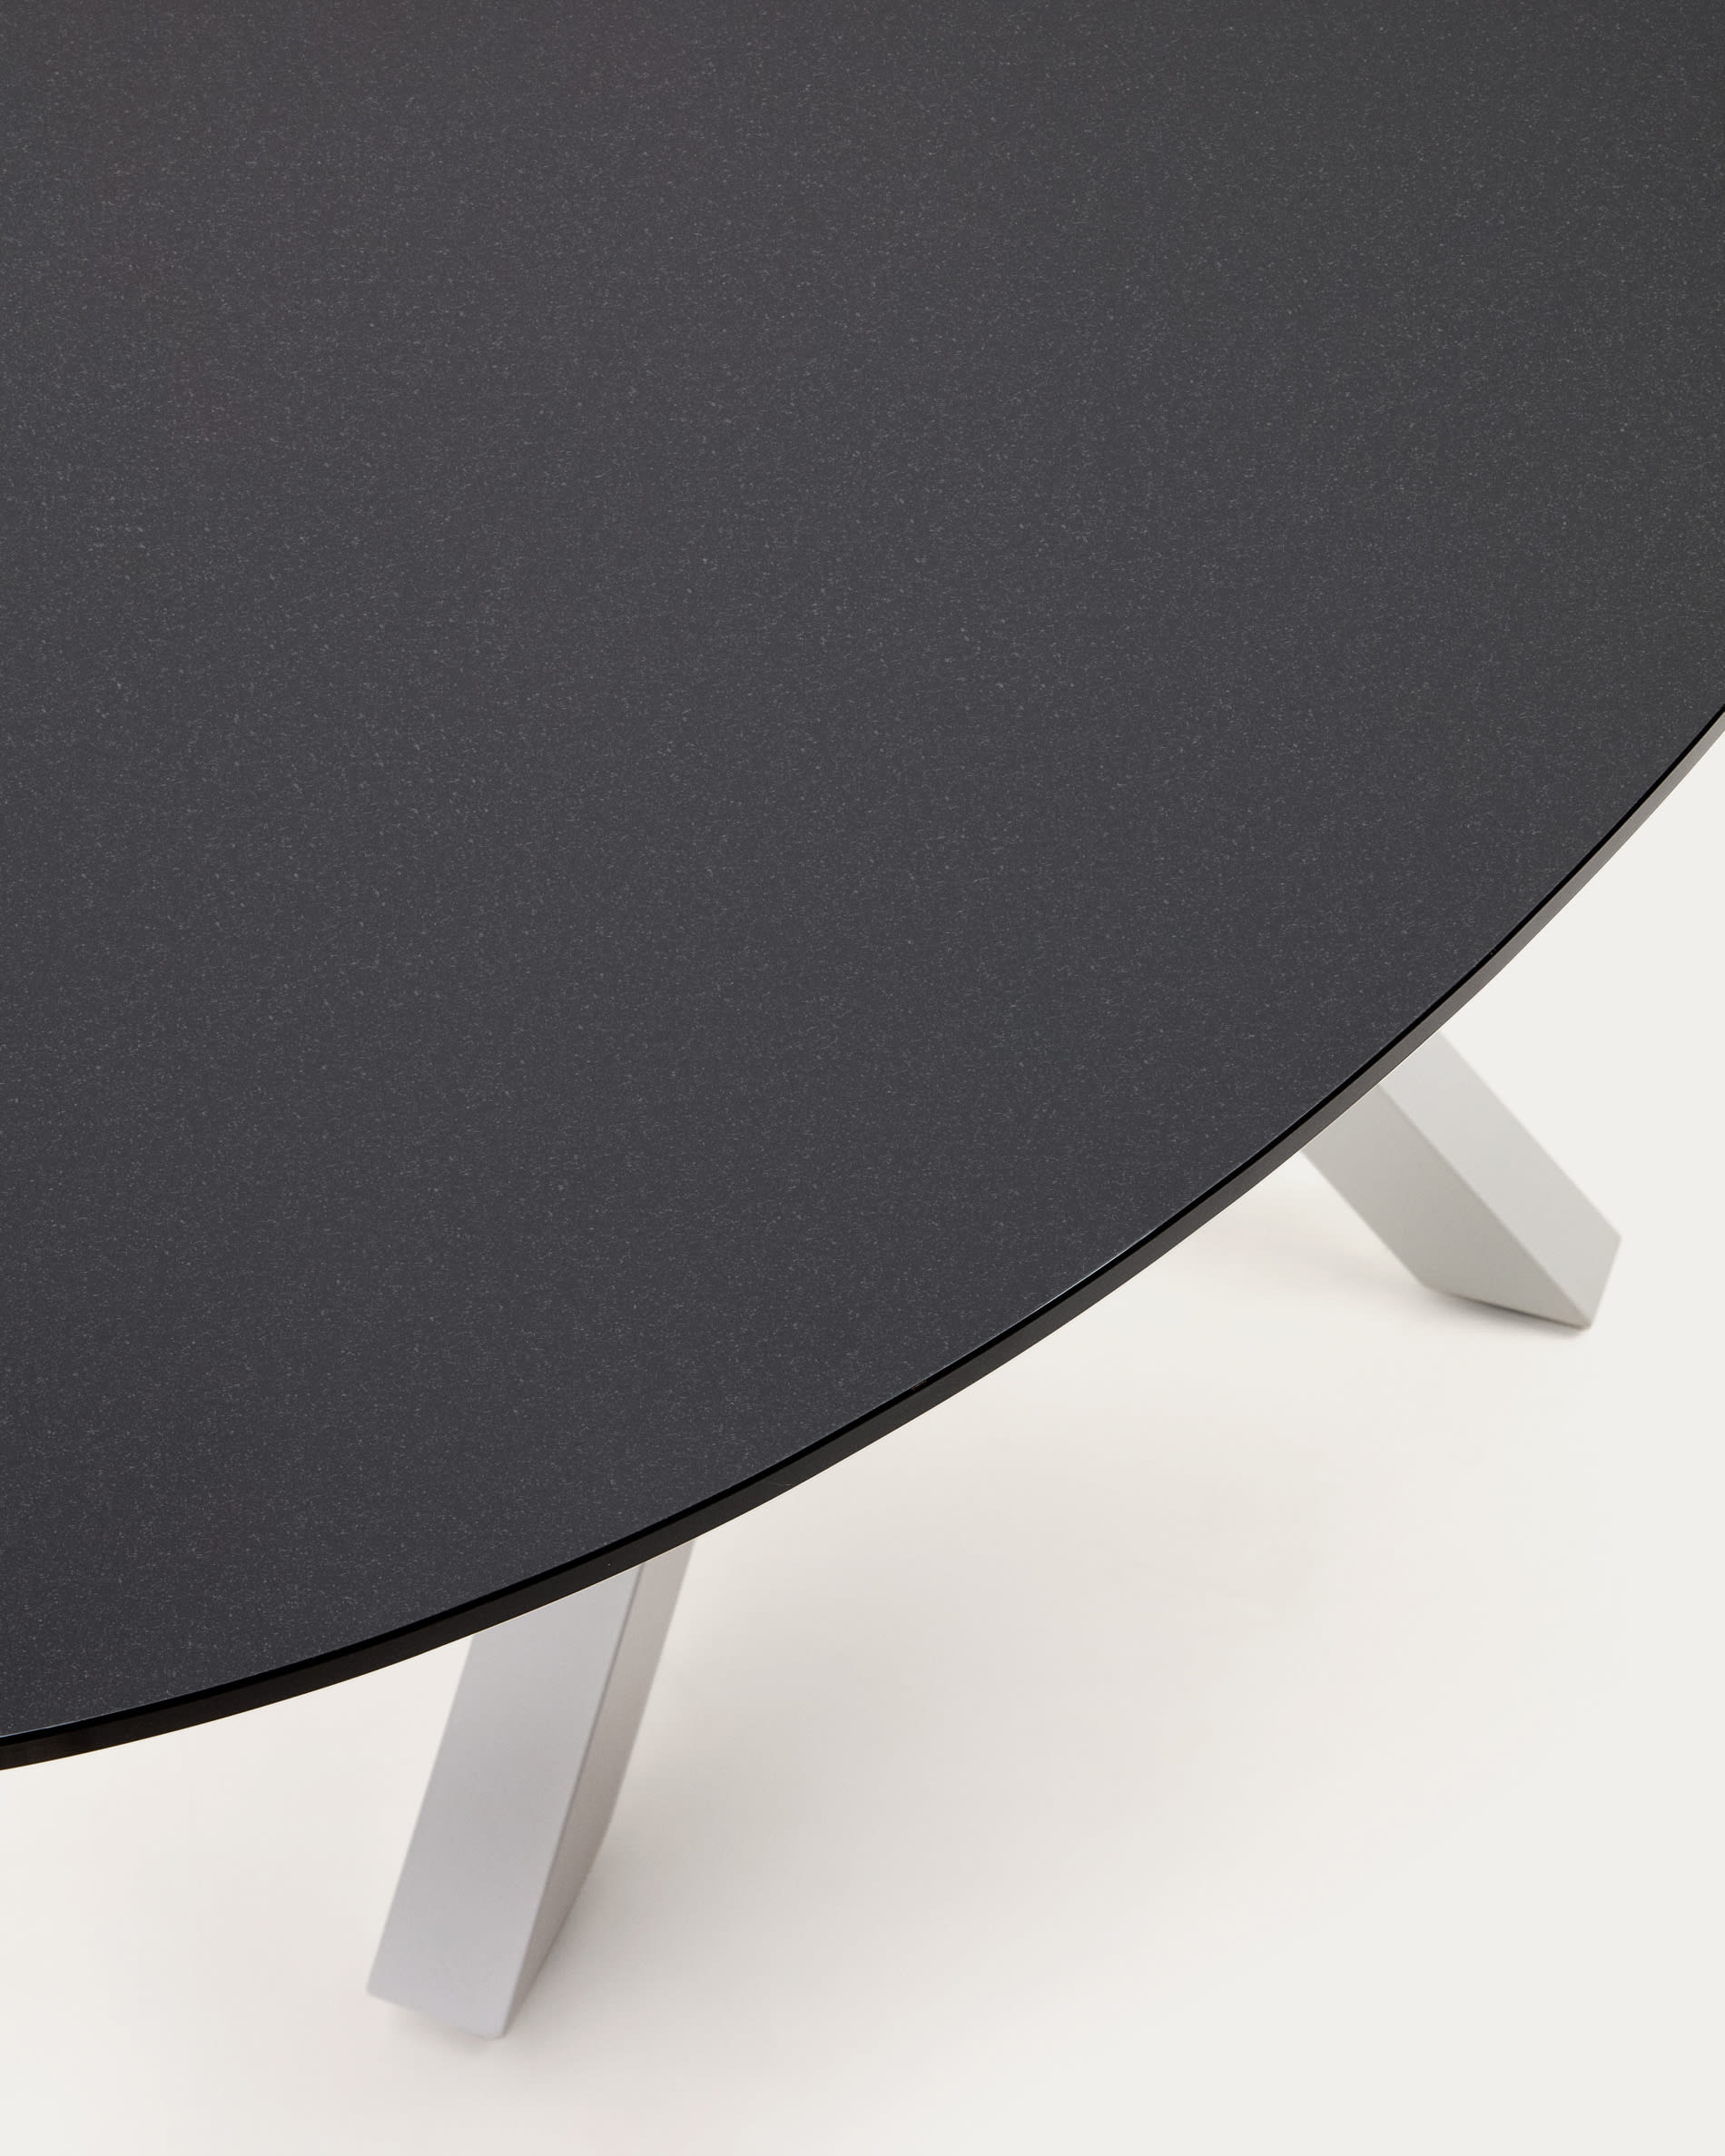 Argo ovális asztal matt fekete üveg és acél lábakkal, fehér befejezéssel Ø 200 x 100 cm